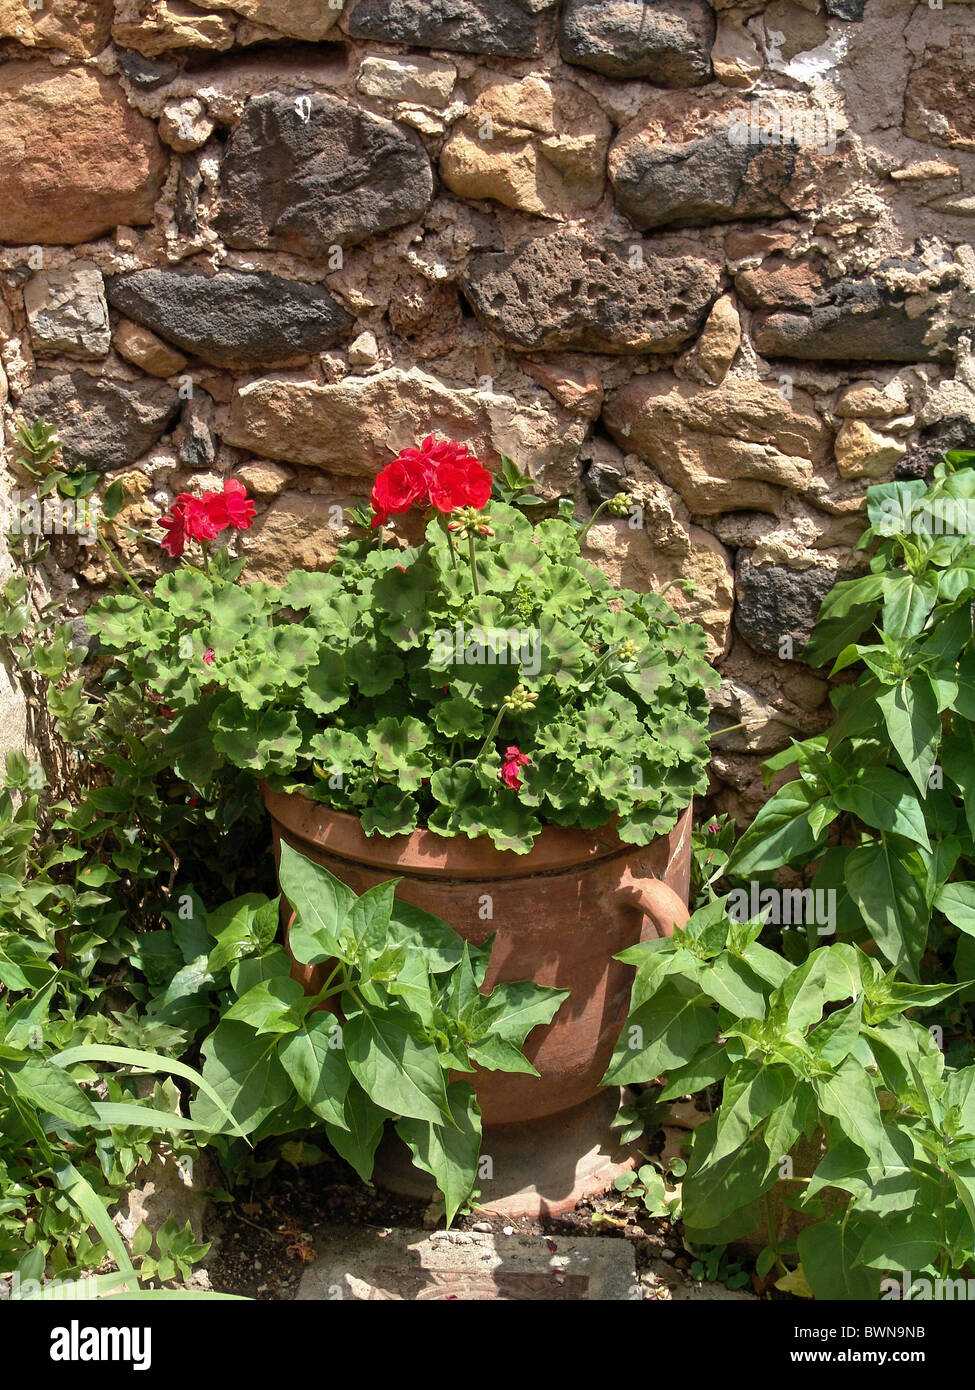 Francia Europa Herault Languedoc-Roussillion botted Mourze geranio plantas plantas de flores flores aún pared l Foto de stock